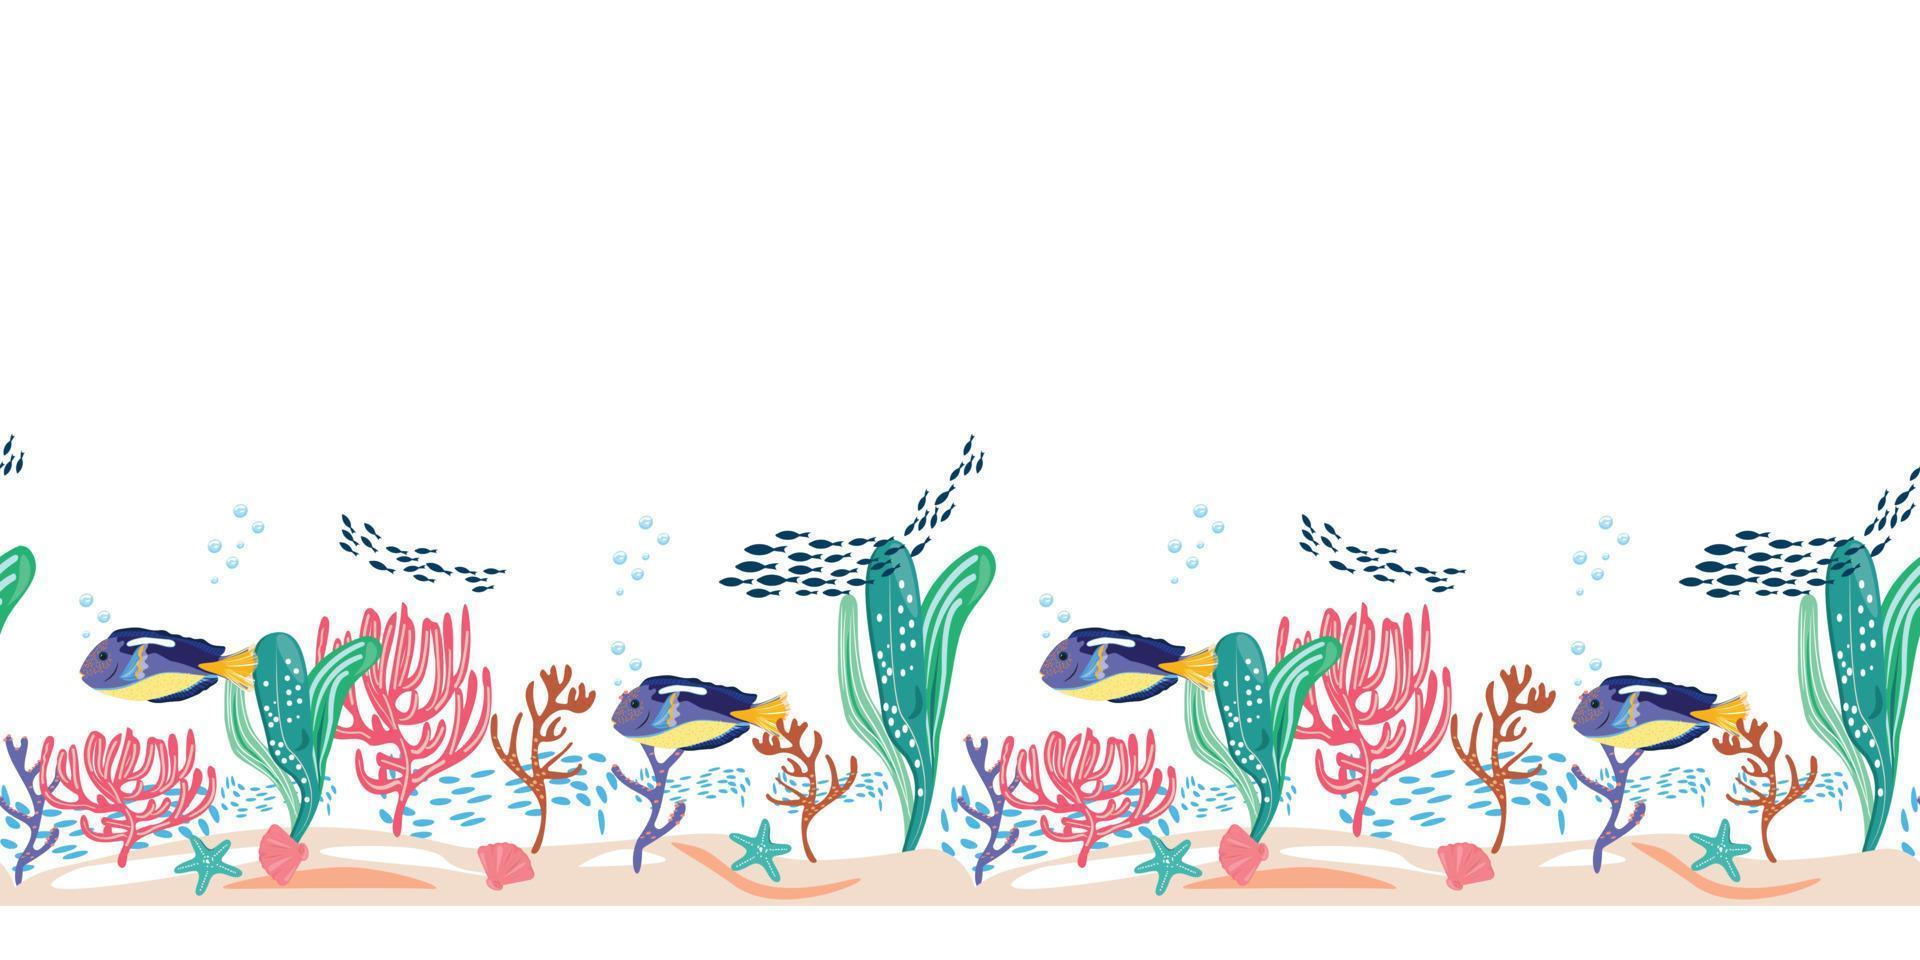 vis seaquarium met blue tang vis, zeester, schelp en koralen. naadloze horizontale patroon met vissen en onderwater items op witte achtergrond. voor textiel, kaarten, designoppervlakken, verpakkingen. vector